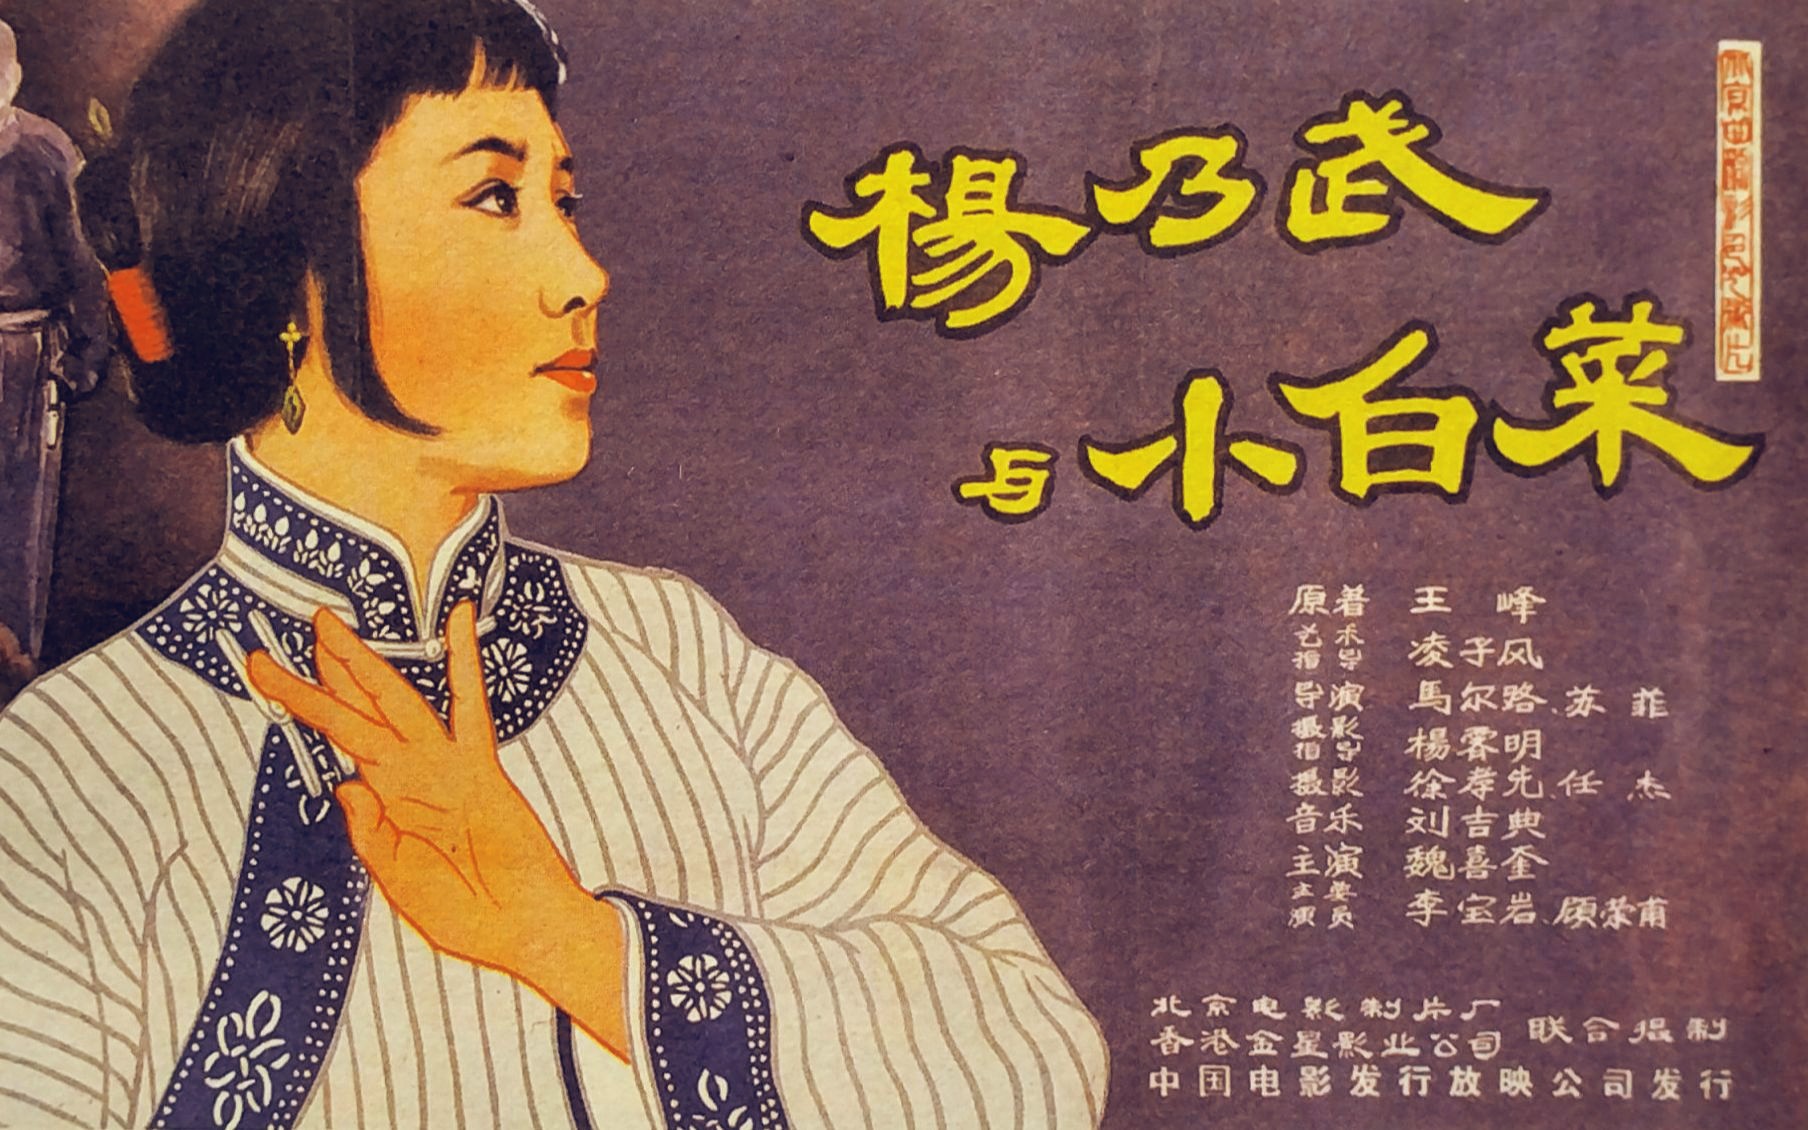 《杨乃武与小白菜(1962)》经典高清修复彩色戏曲老电影完整版在线免费